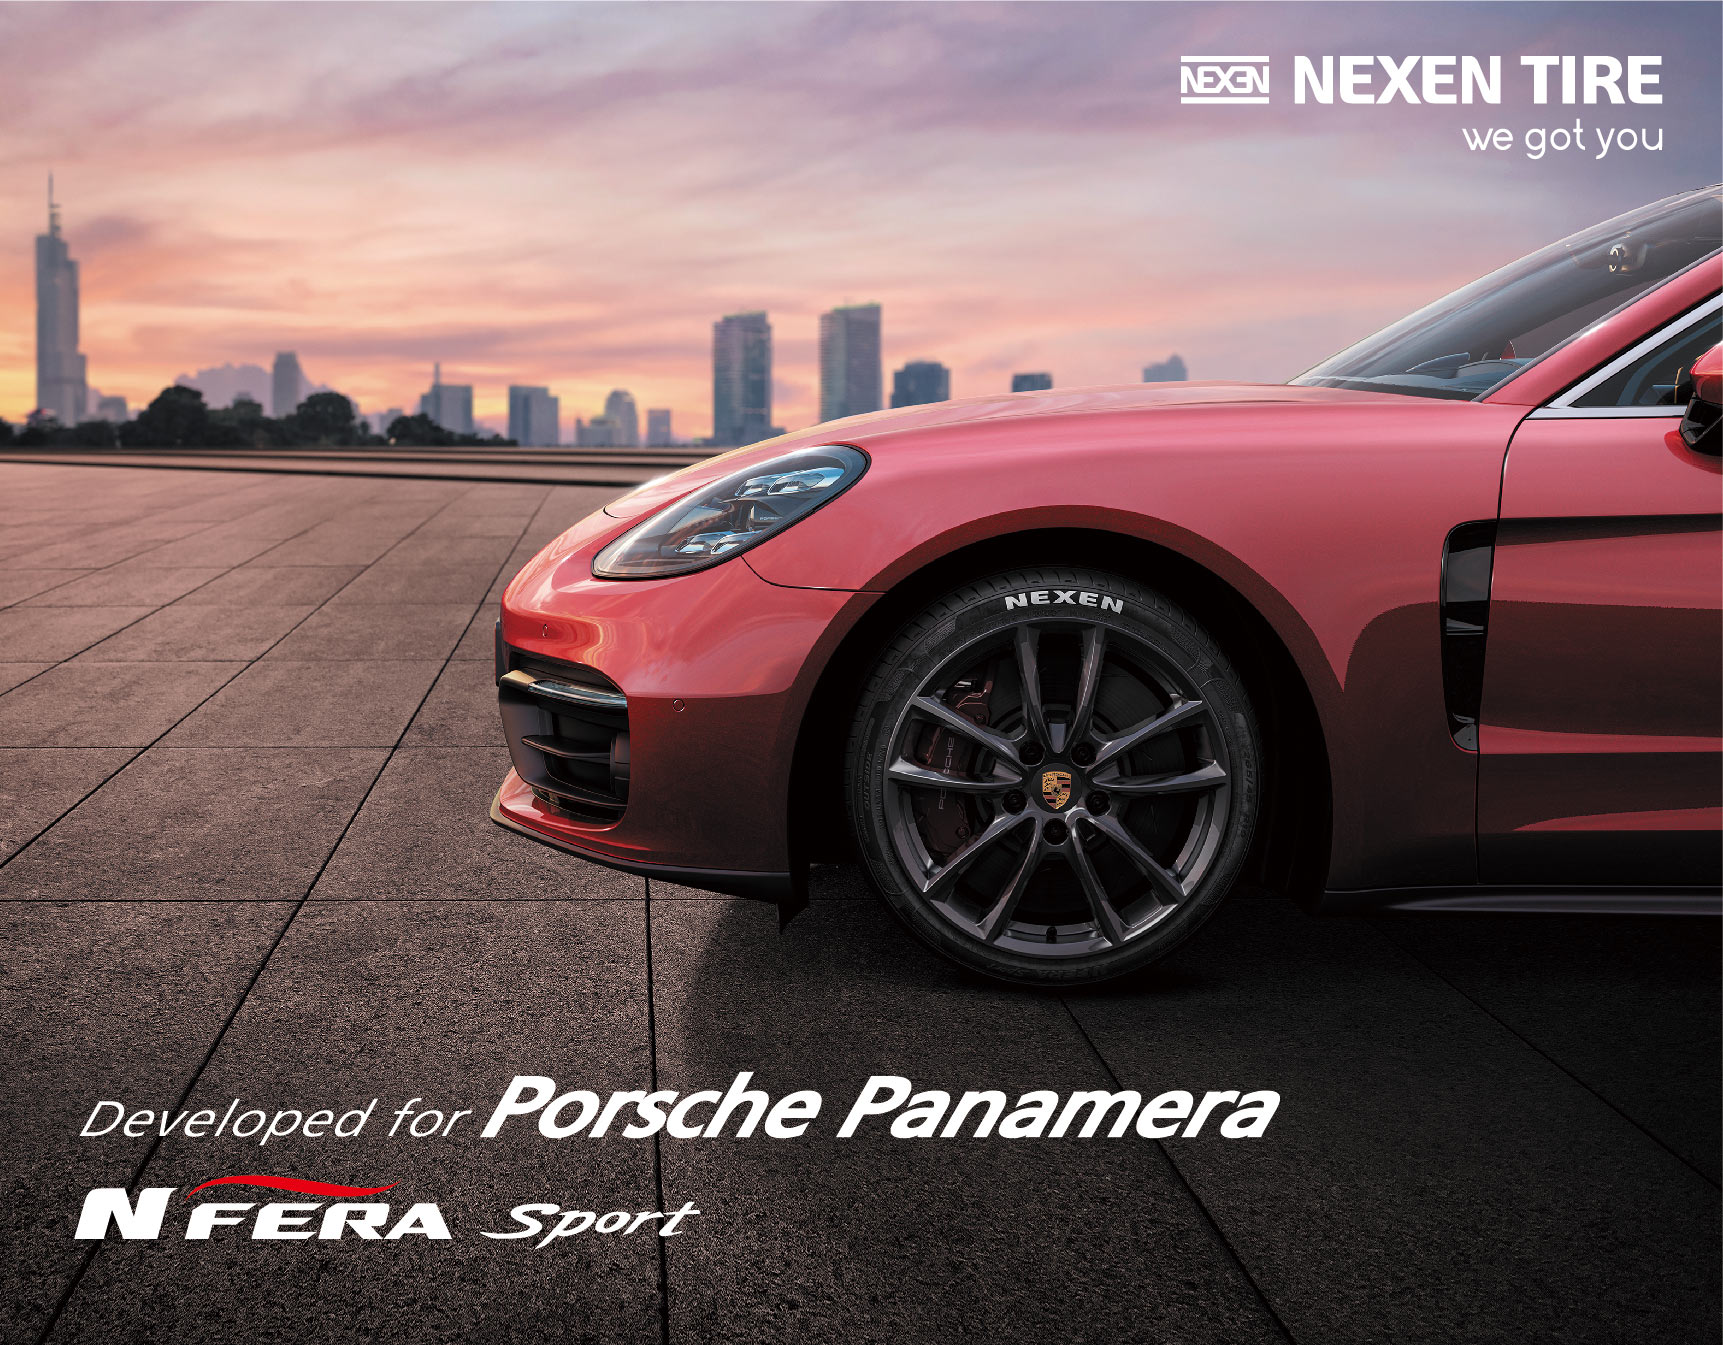 (넥센2)넥센타이어 엔페라 스포츠 제품 포르쉐 파나메라 차량에 공급.jpg